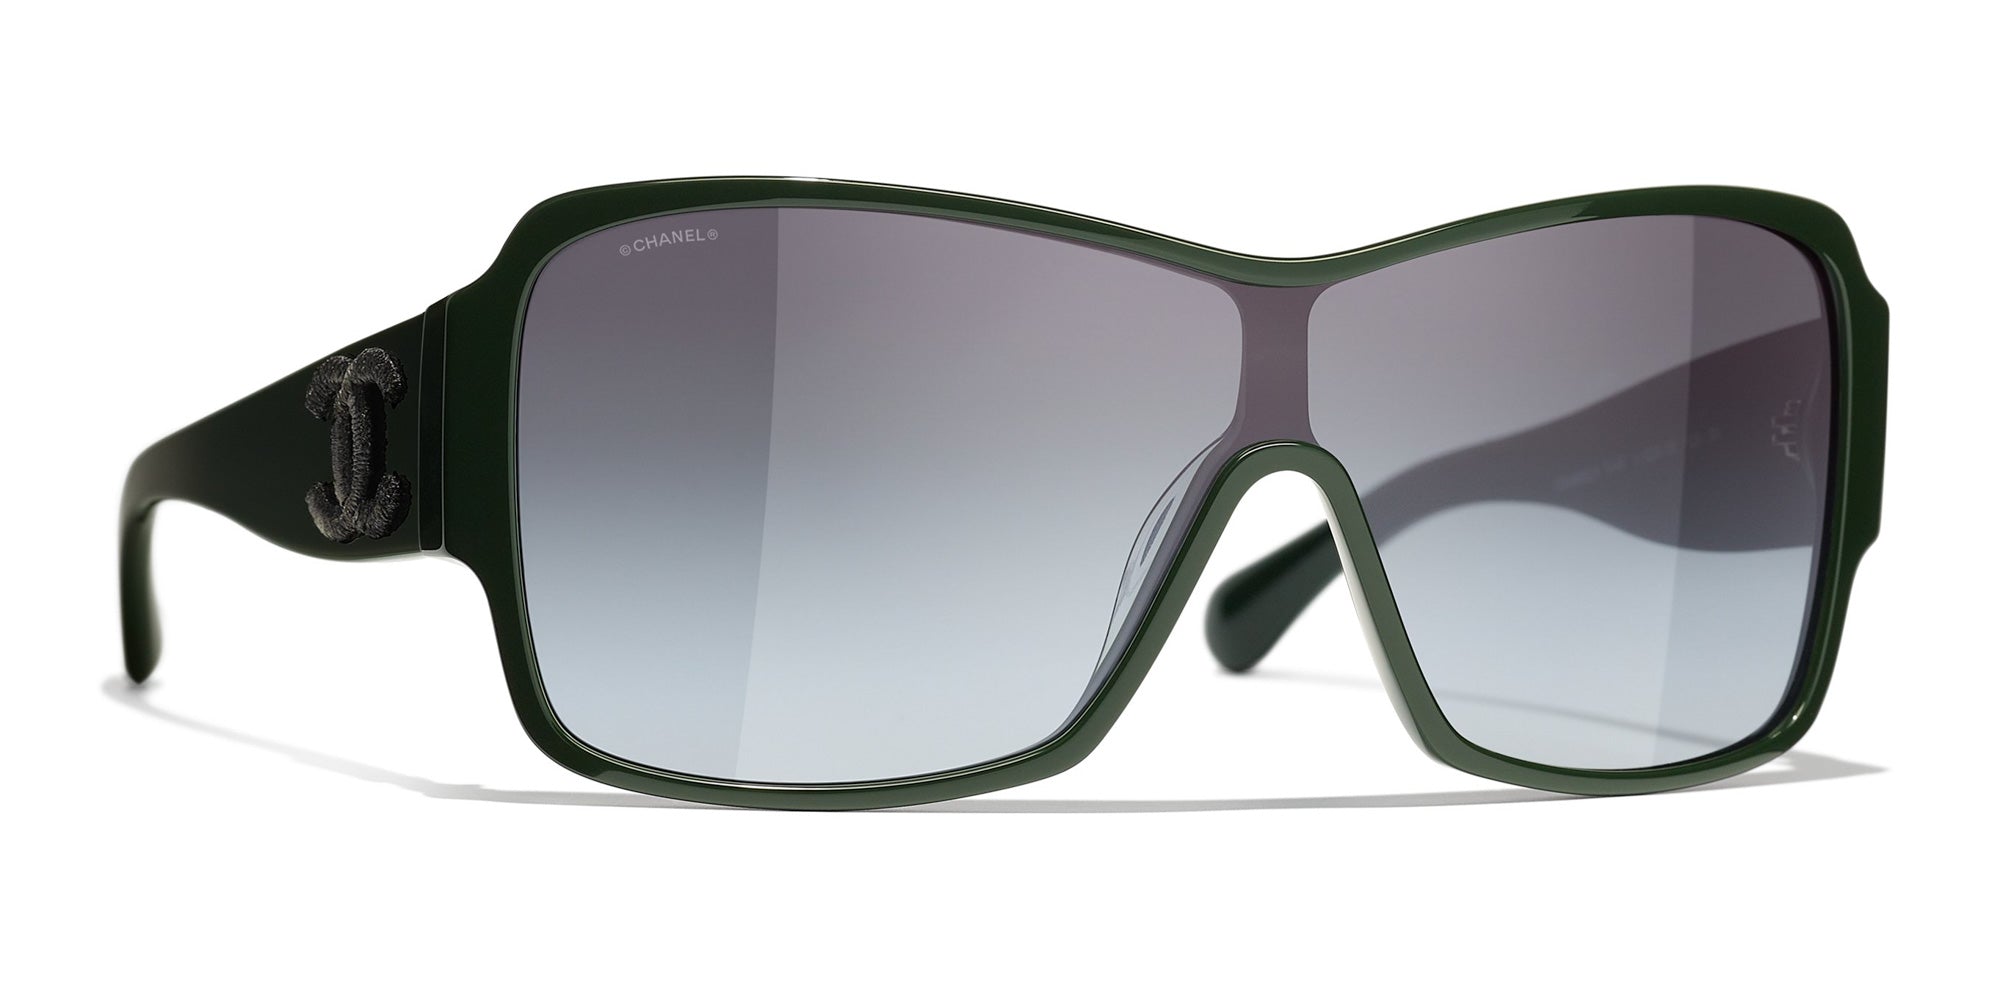 Sunglasses Chanel Chanel 5449 1228/S6 Gradient Oversized Shield Sunglasses in Dark Green Acetate